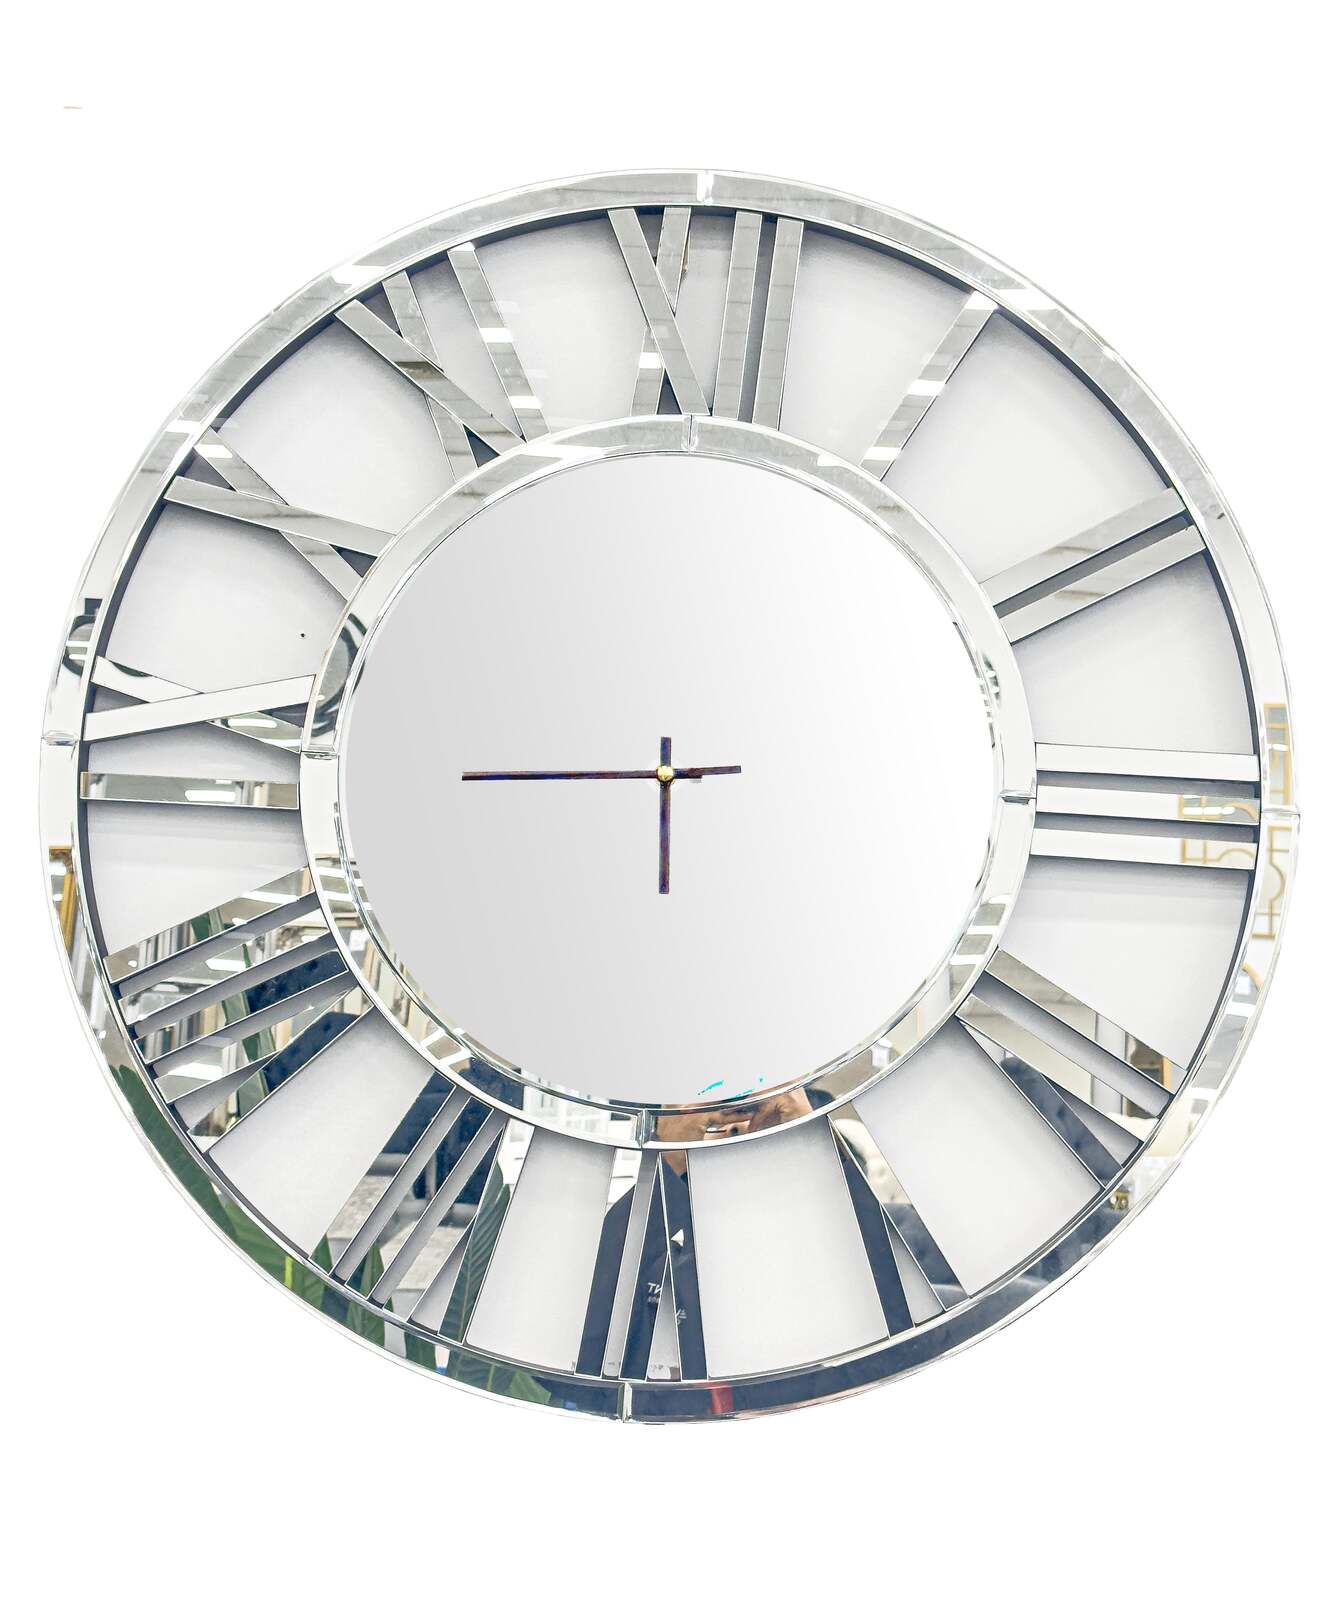 Decorative Silver Mirrored Clock